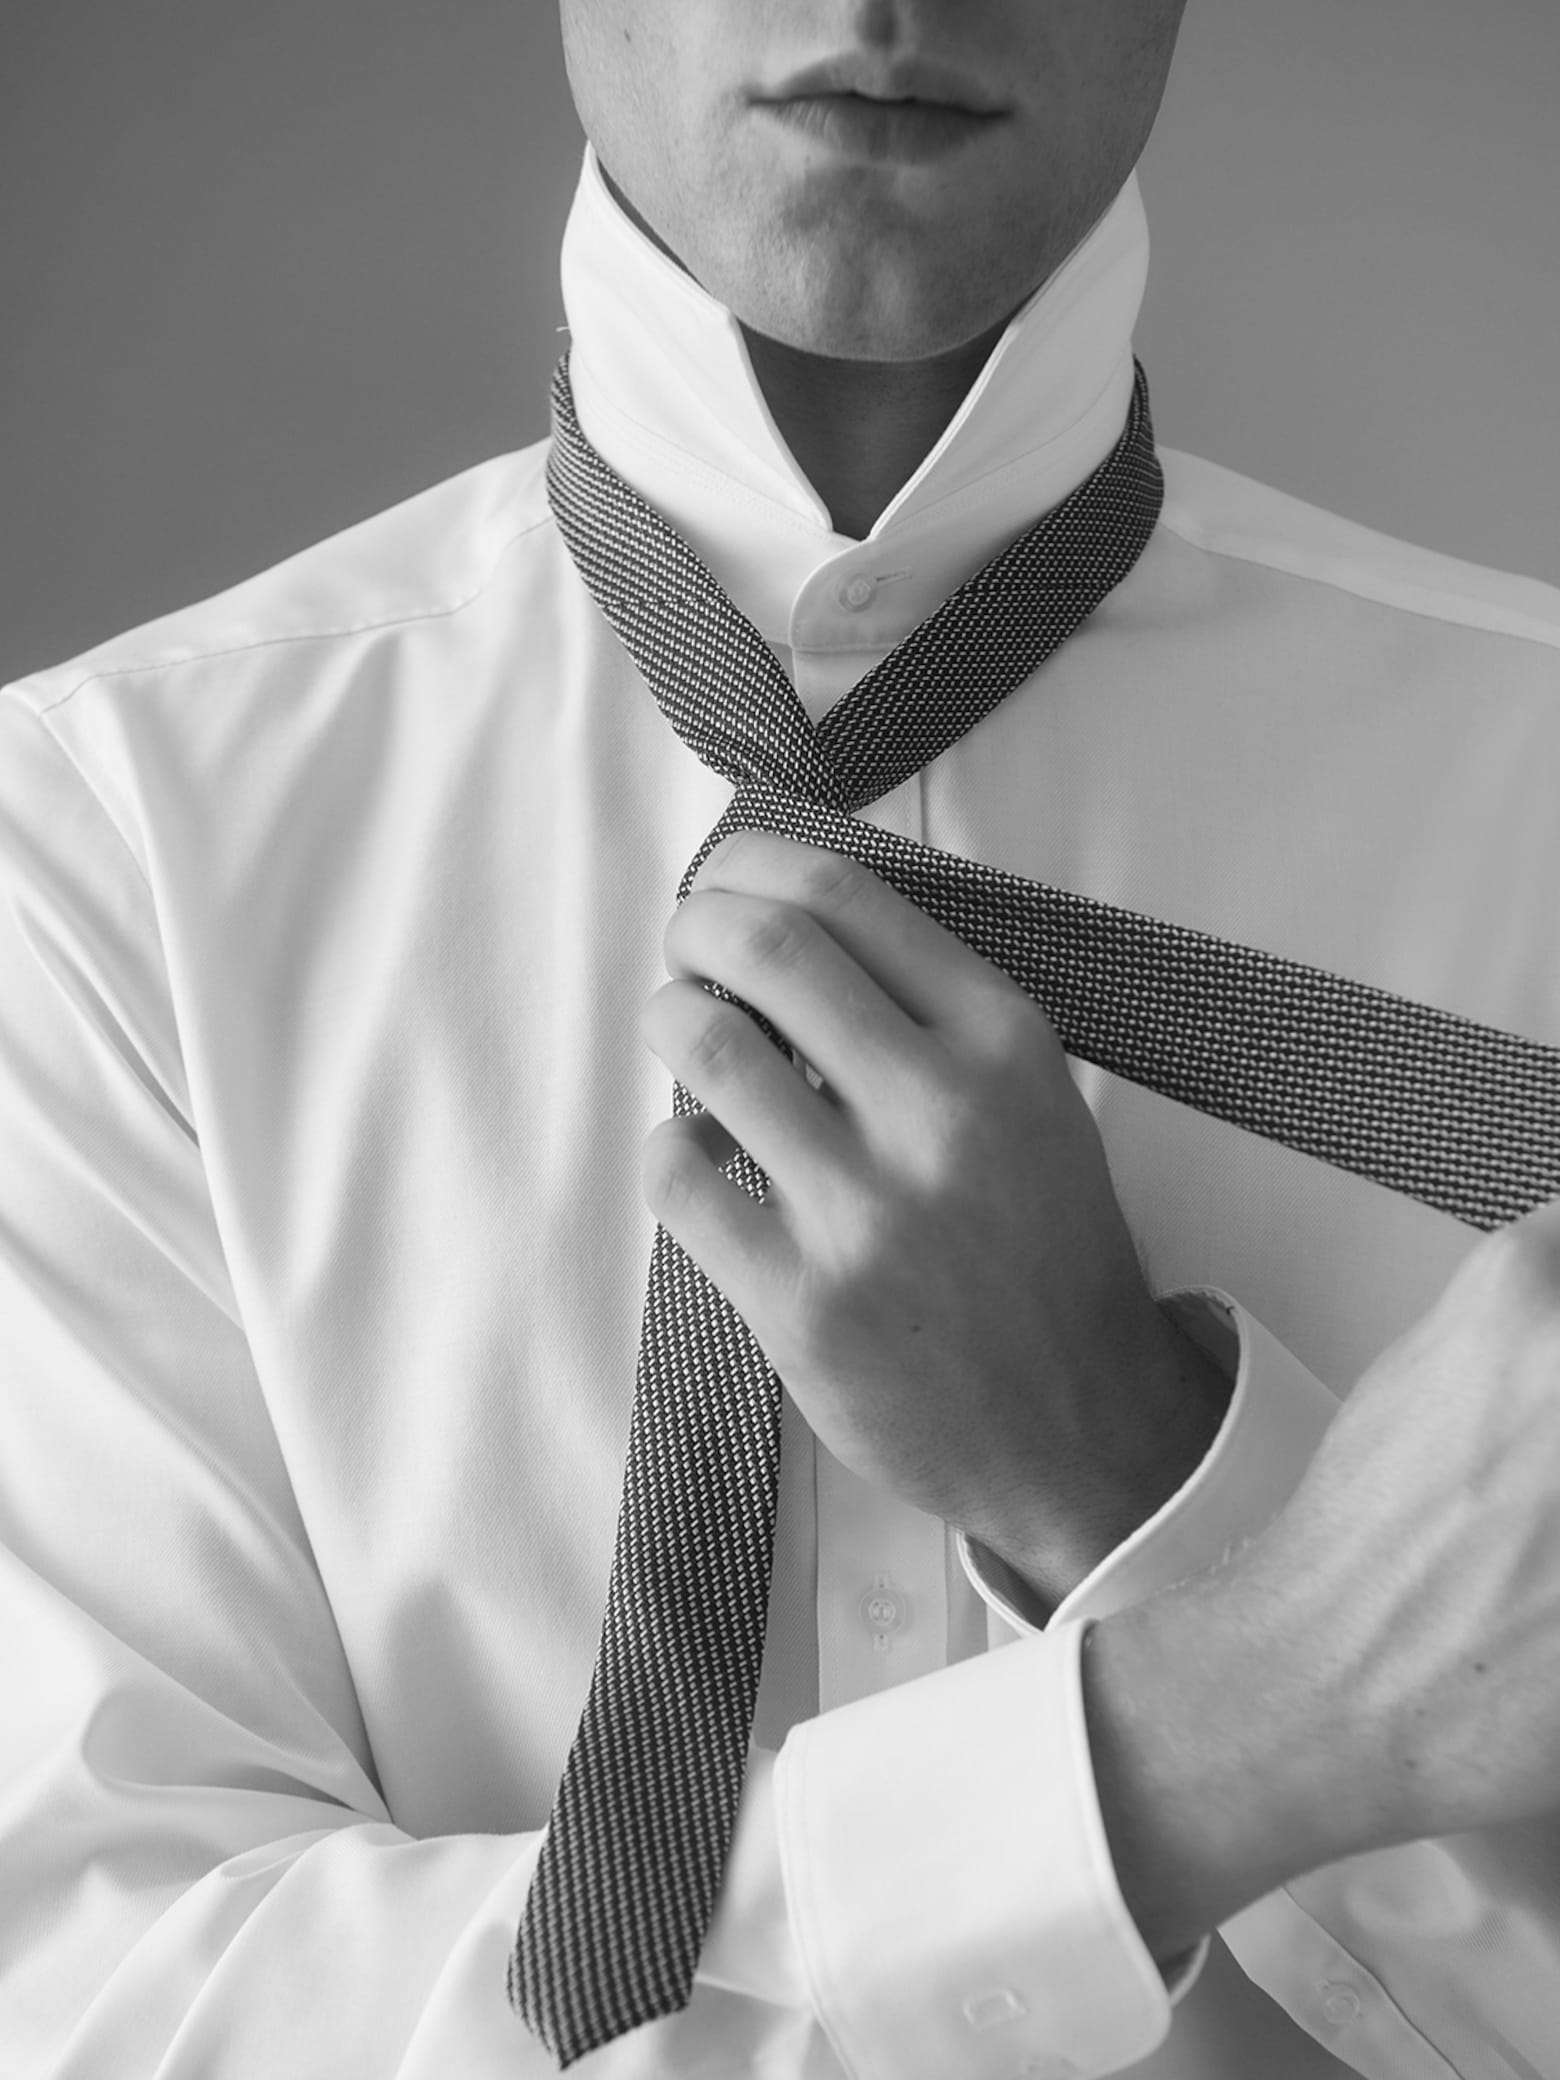 Žingsnis po žingsnio Kaip užsirišti kaklaraištį